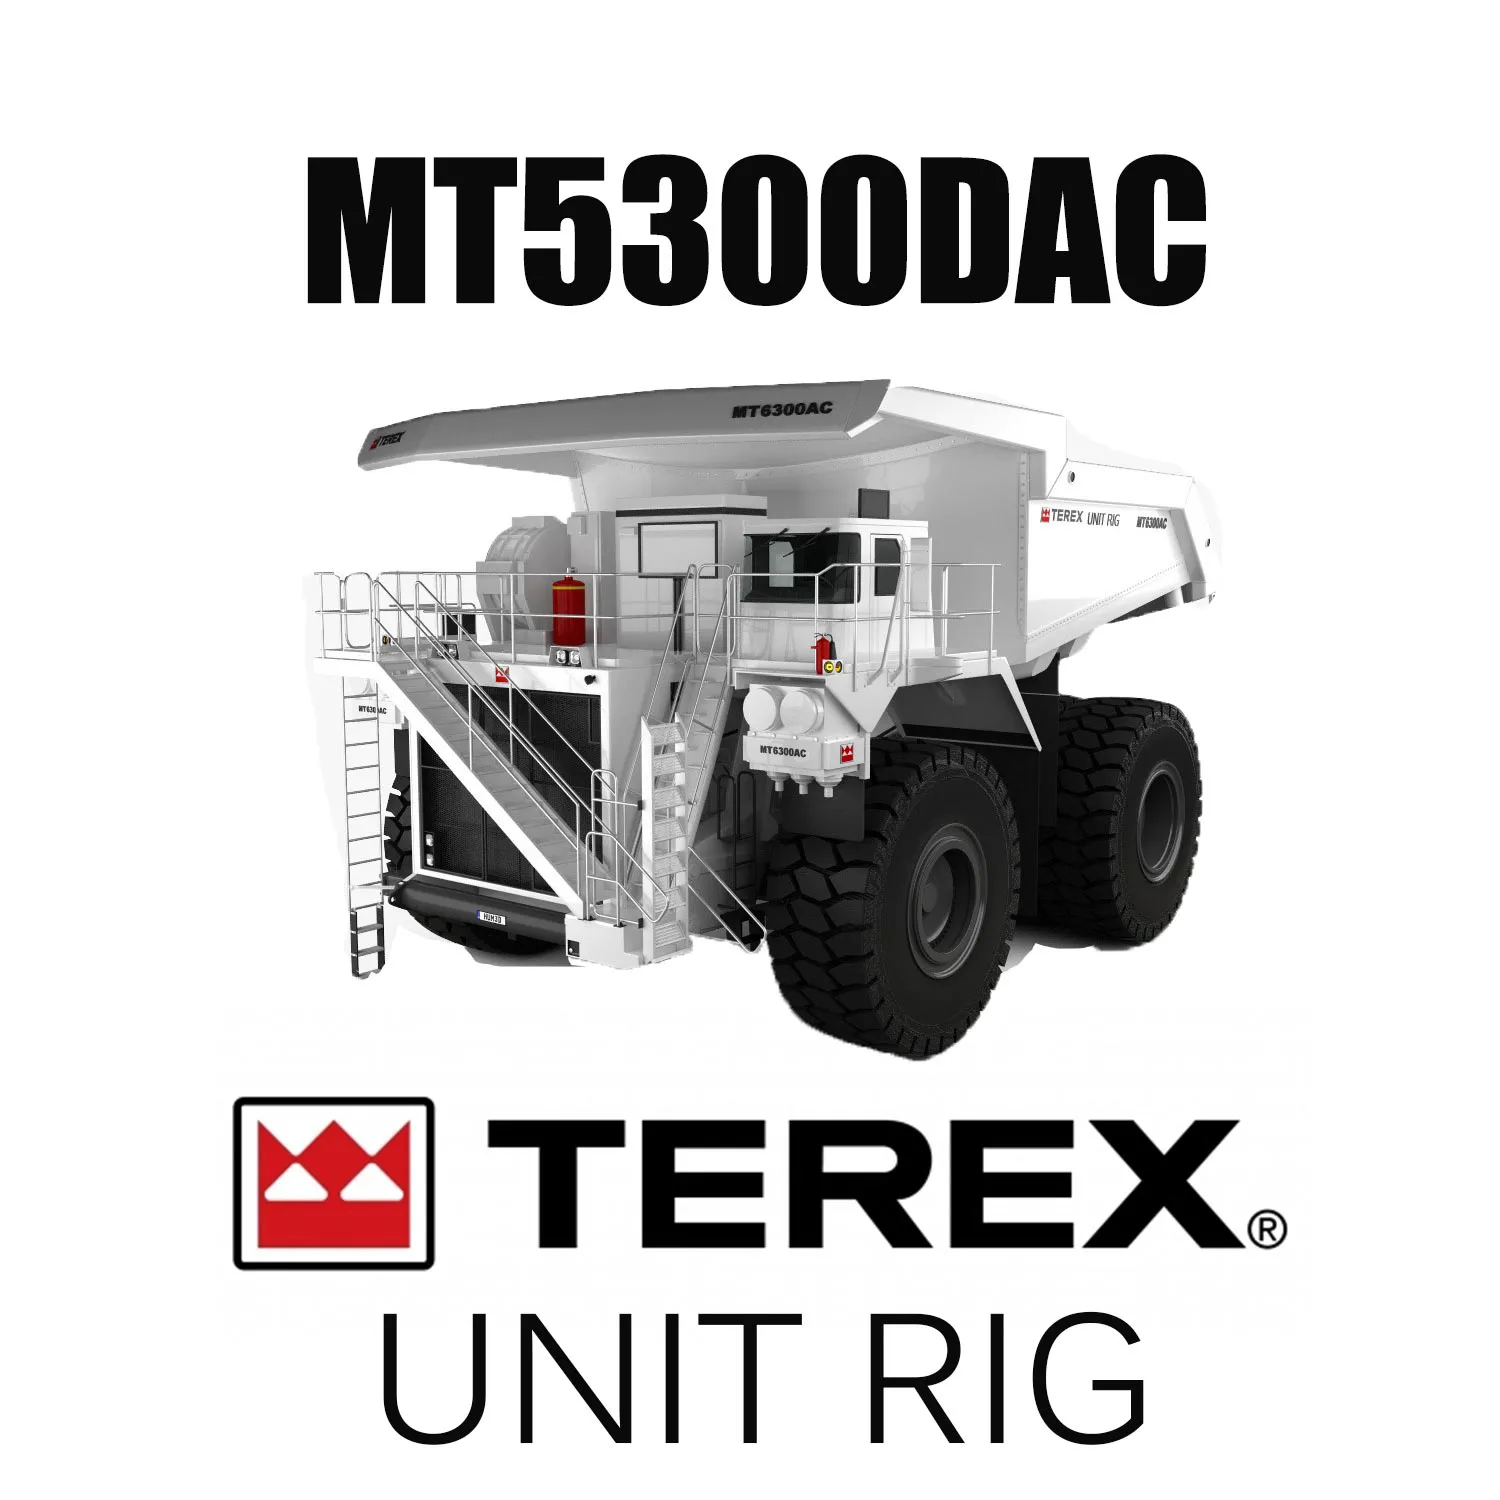 Neumáticos OTR para excavadora gigante de 63 pulgadas 53/80R63 para equipos de minería UNIT RIG MT5300DAC